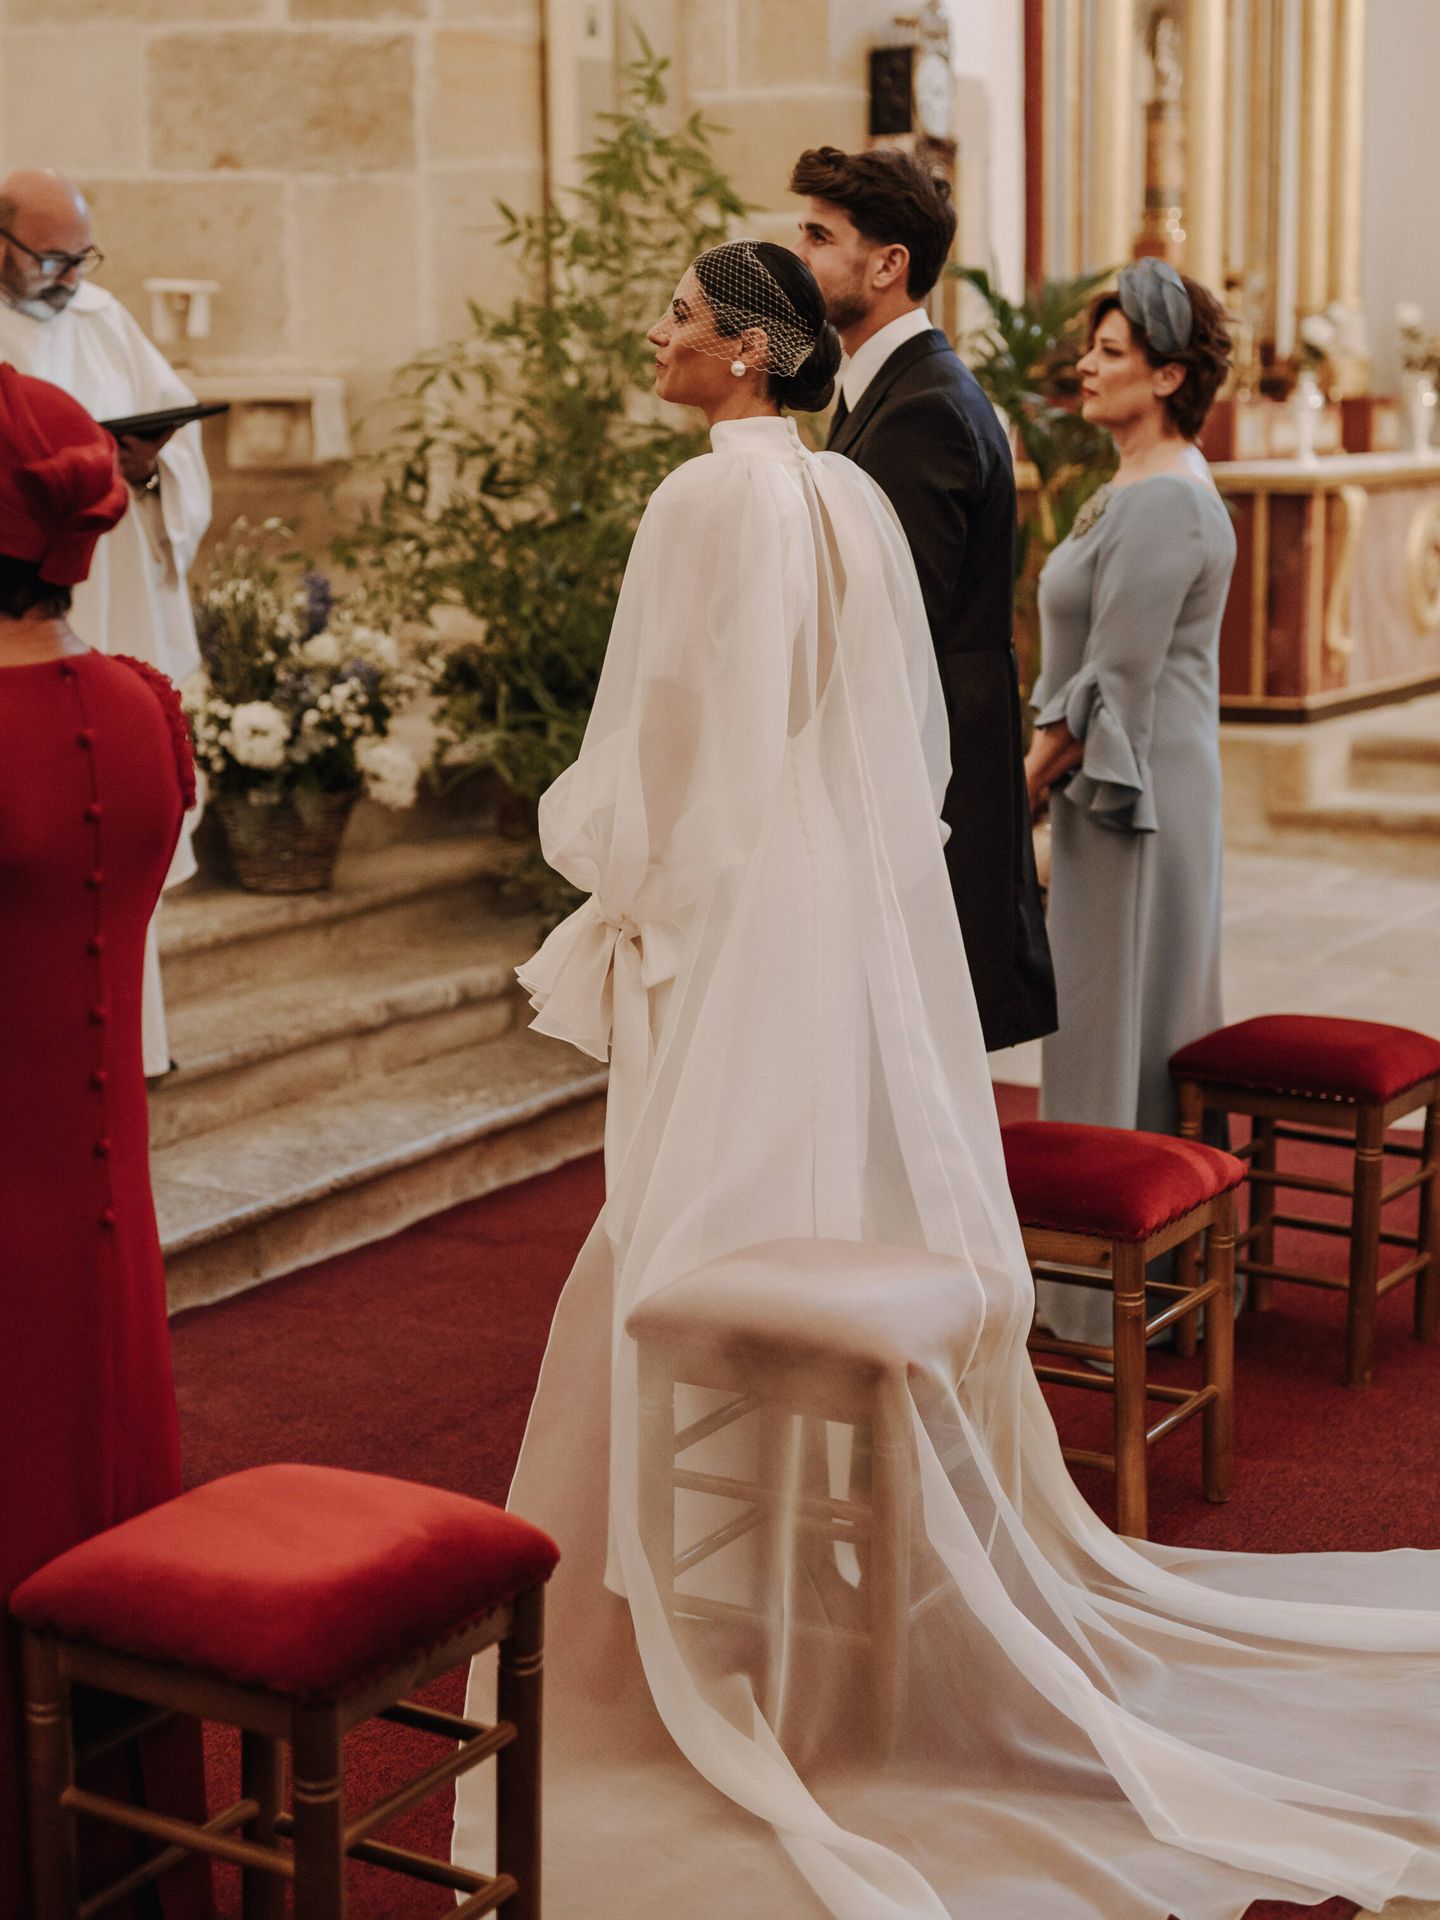 La boda de Cristina en Cantabria. (Fotos Concorazón)
